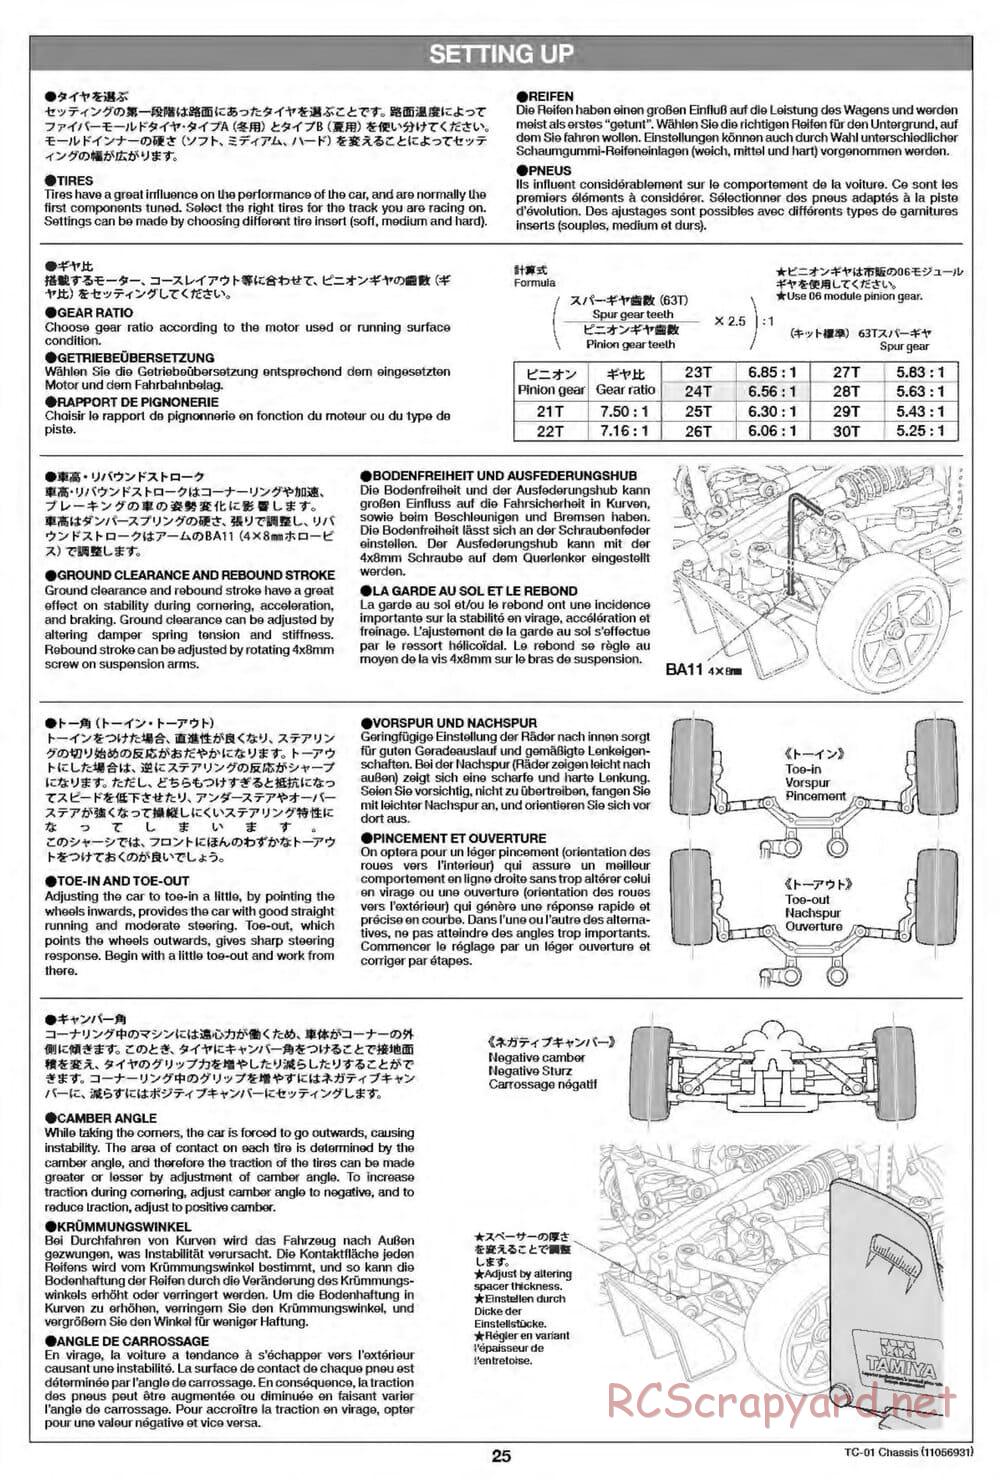 Tamiya - TC-01 Chassis - Manual - Page 25